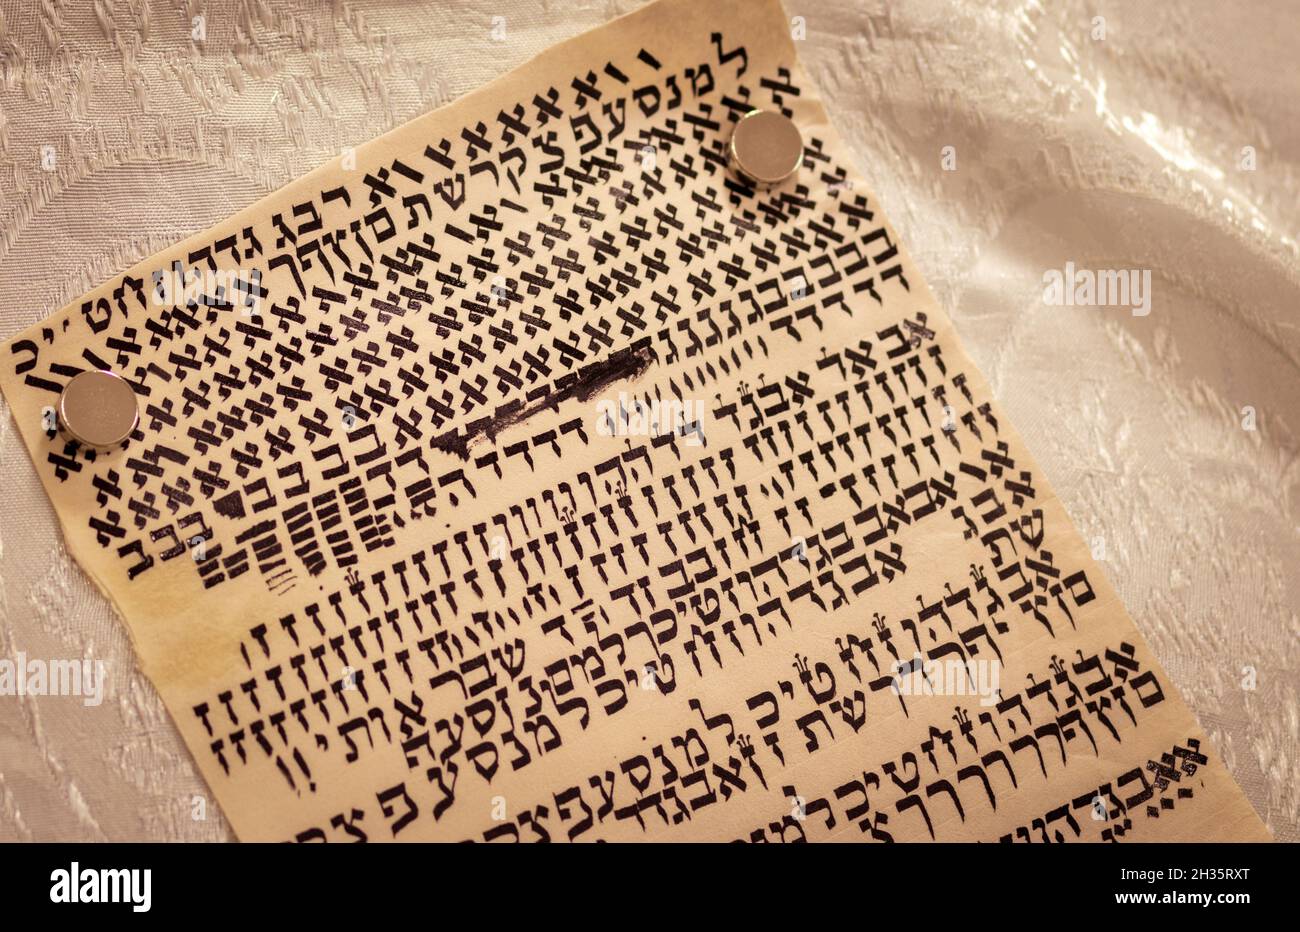 Lettere ebraiche scritte su pergamena, una scritta speciale di un rotolo Torah. (Al redattore - le lettere sono casuali senza significato) Foto Stock